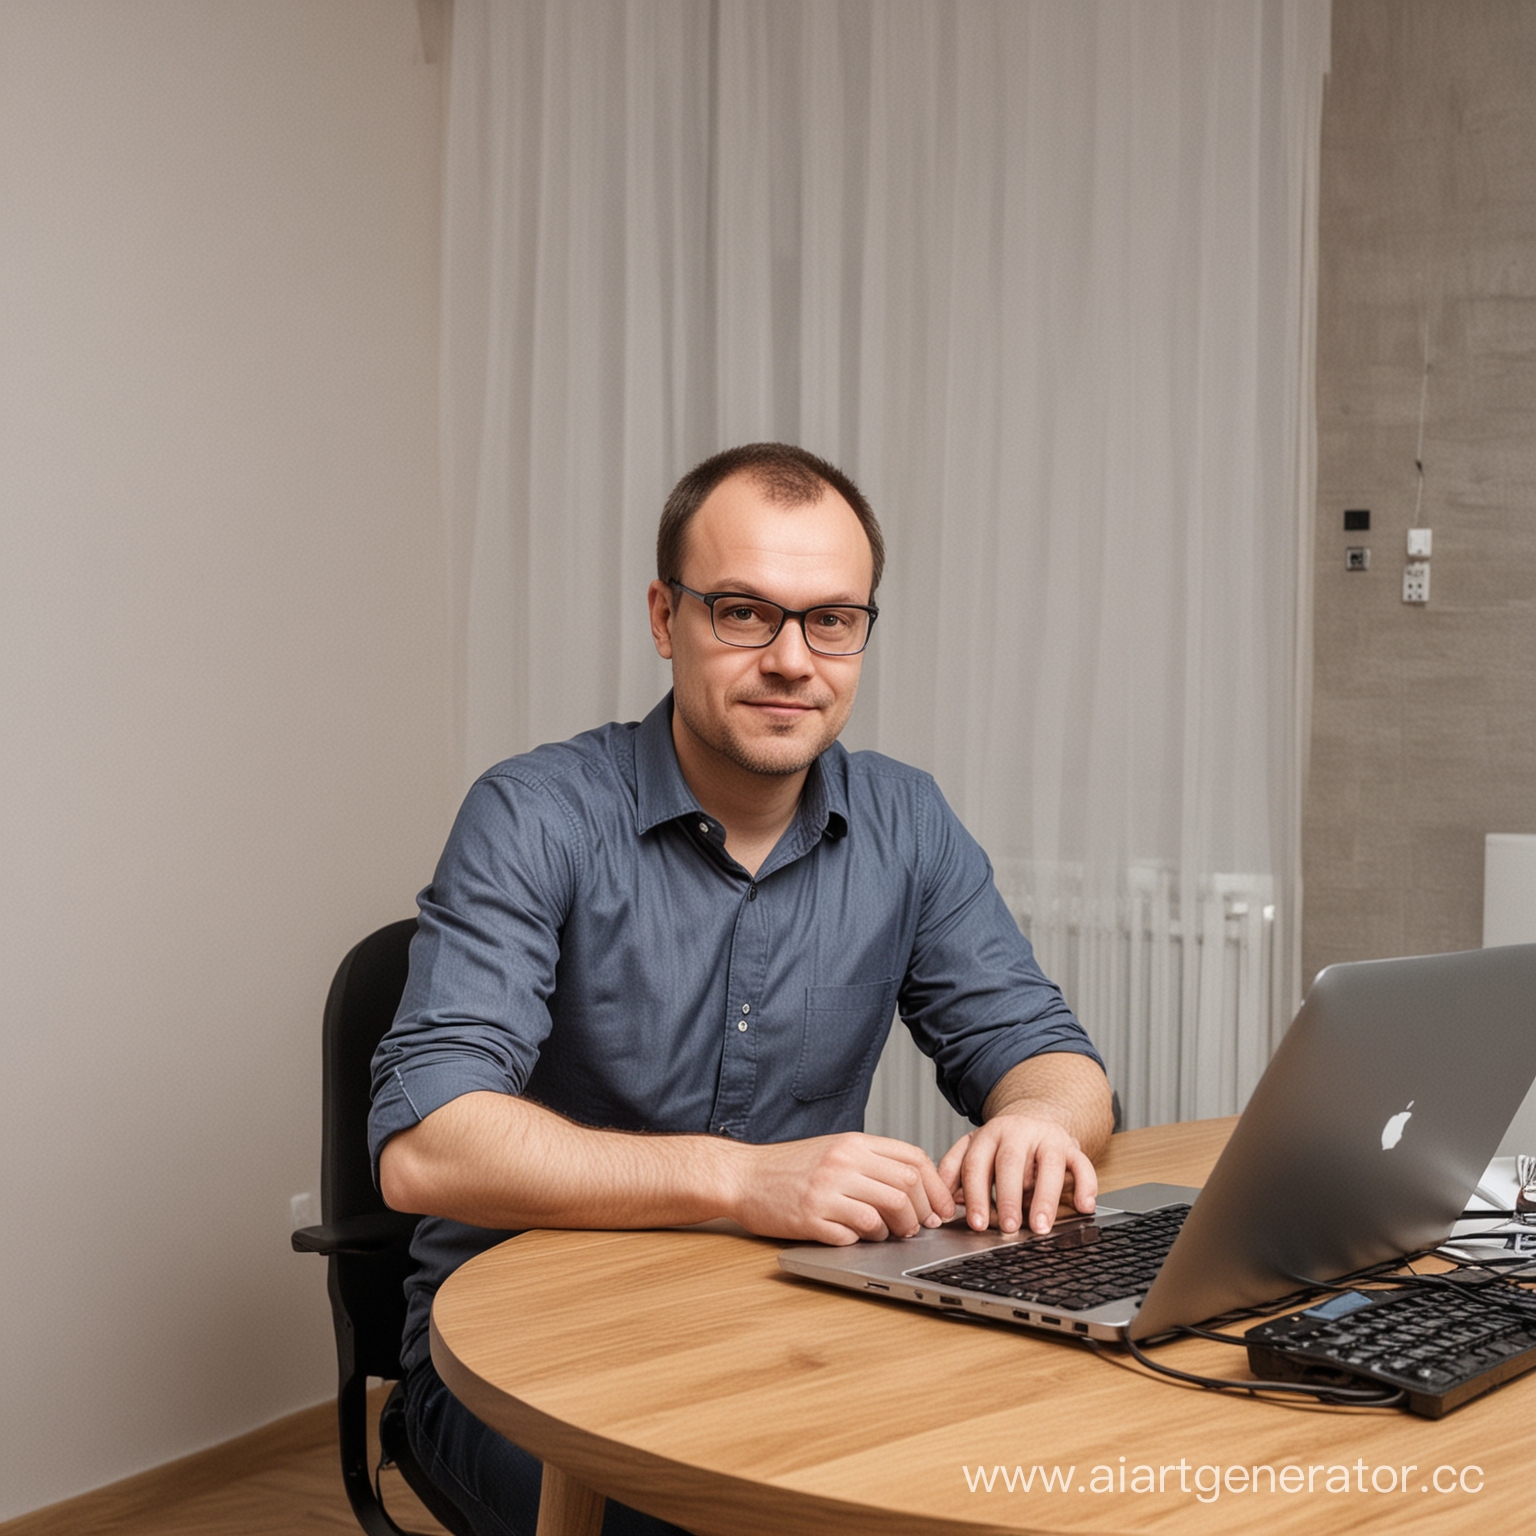 Андрей Морозов
42 года
IT-сециалист
Снимает однокомнатную квартиру
Многозадачность
Усидчивость
Программирование
